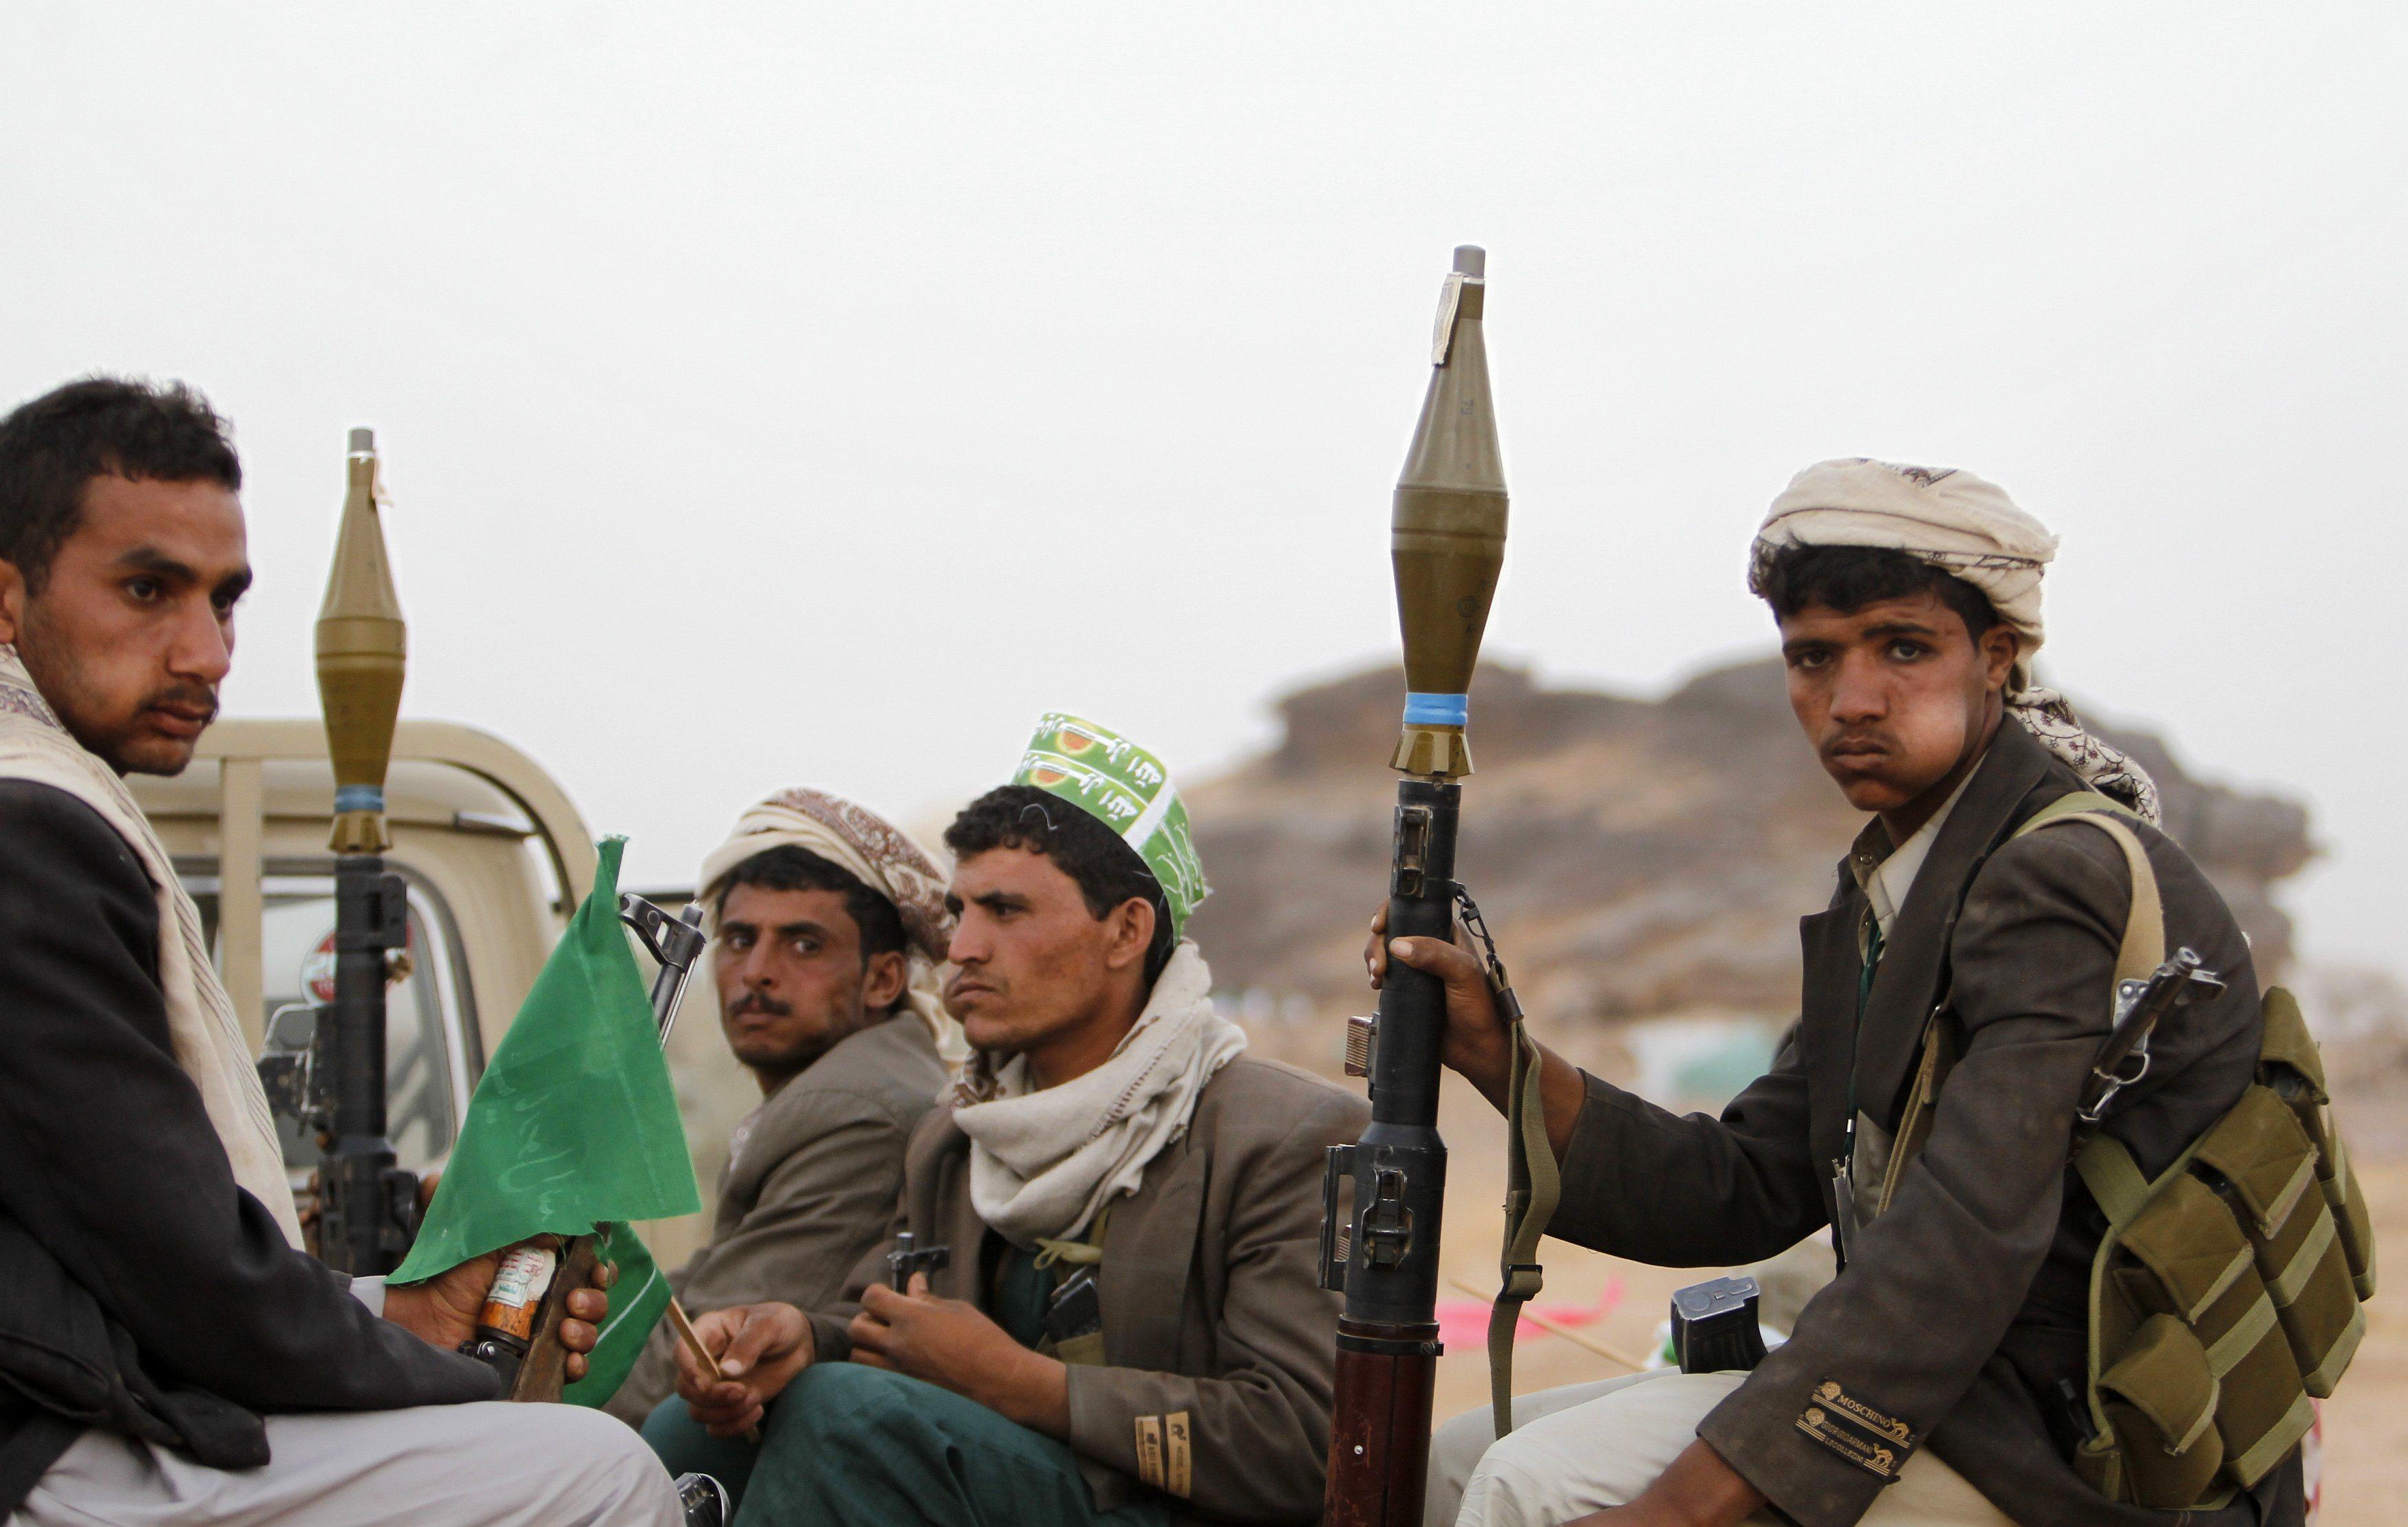 الحوثيون يعتقلون مشايخ تابعين لحزب “على عبدالله صالح”